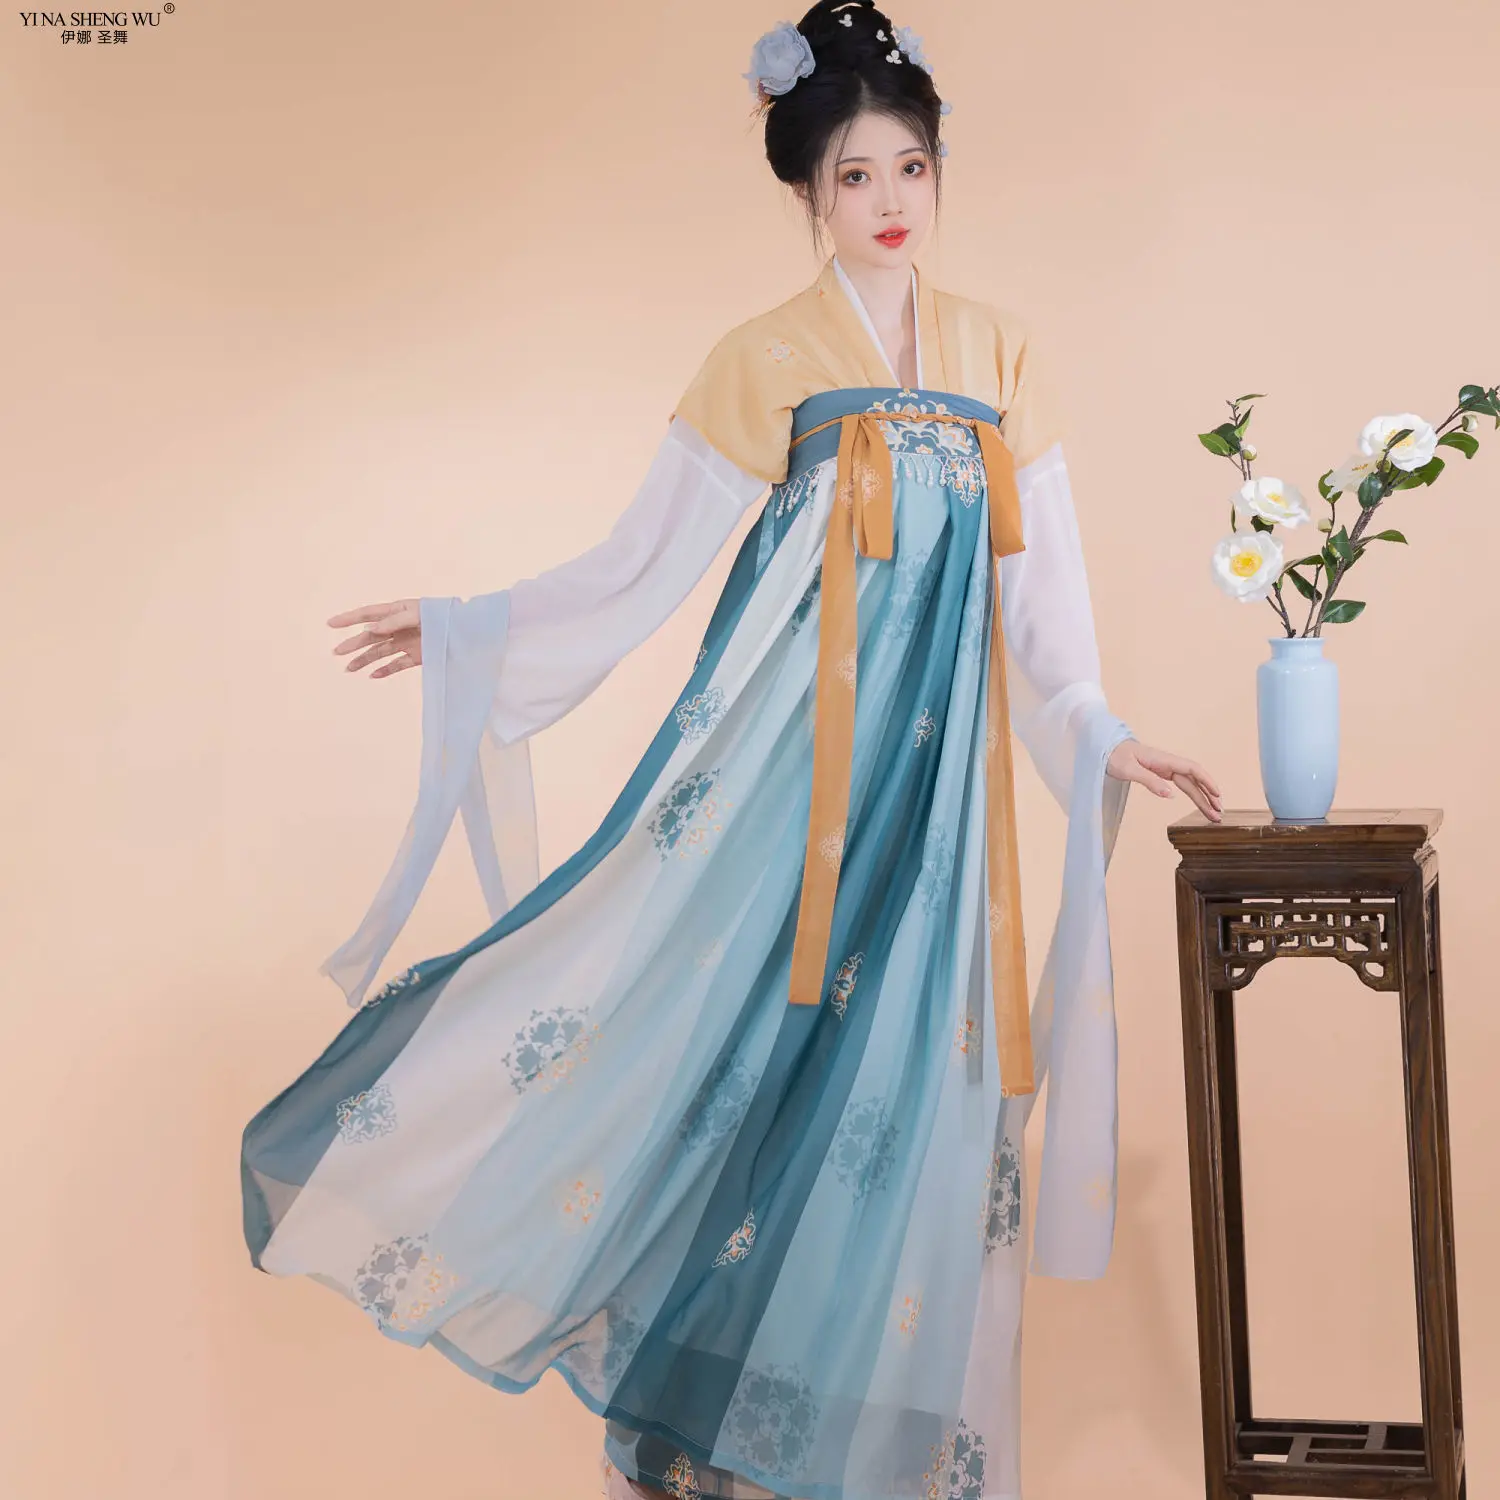 

Традиционная китайская женская одежда ханьфу, традиционный костюм в китайском стиле, костюм для Народной сцены, костюм для выступлений